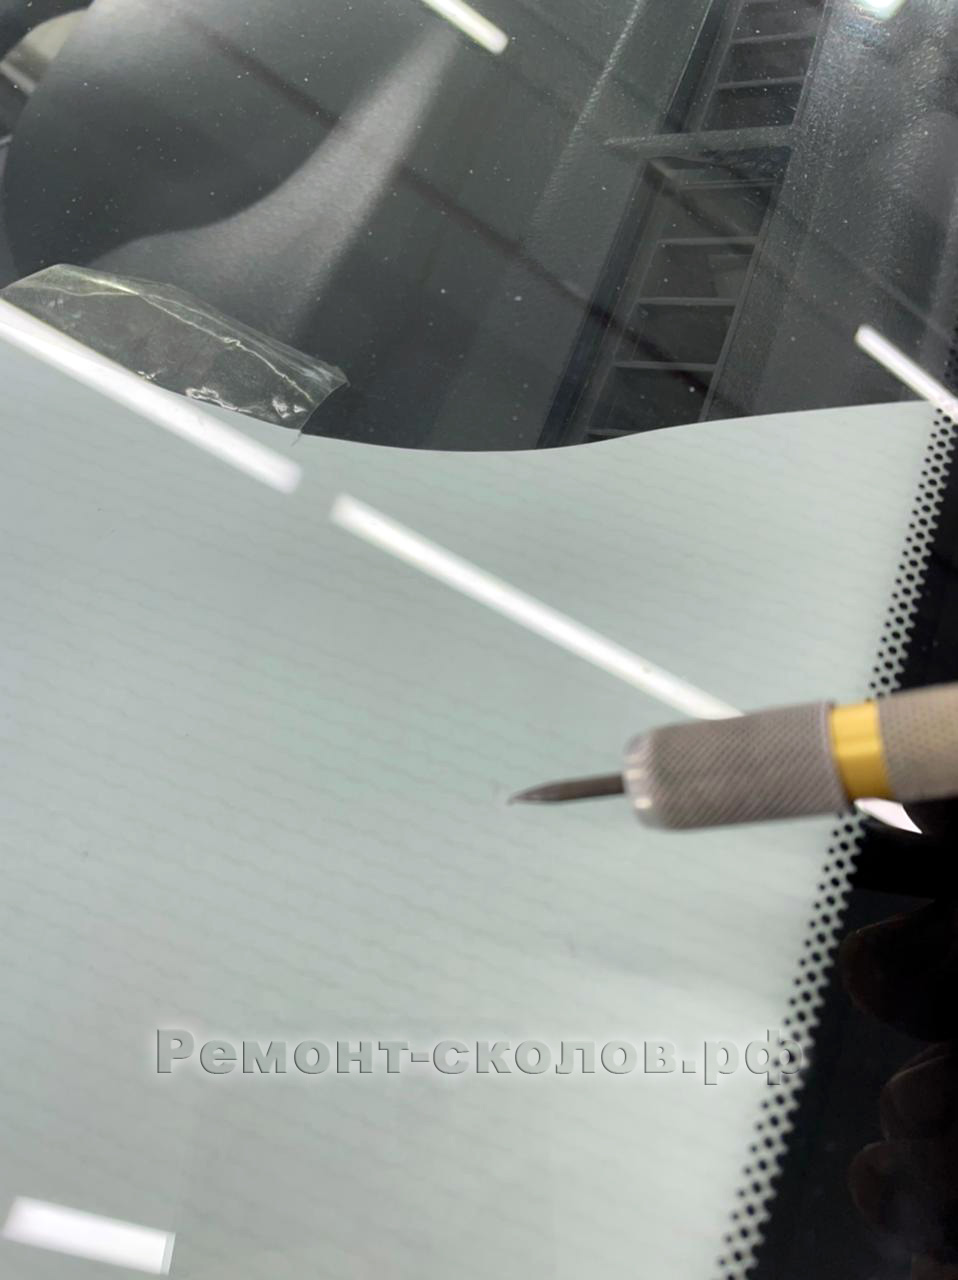 Toyota ремонт скола лобового стекла в Москве